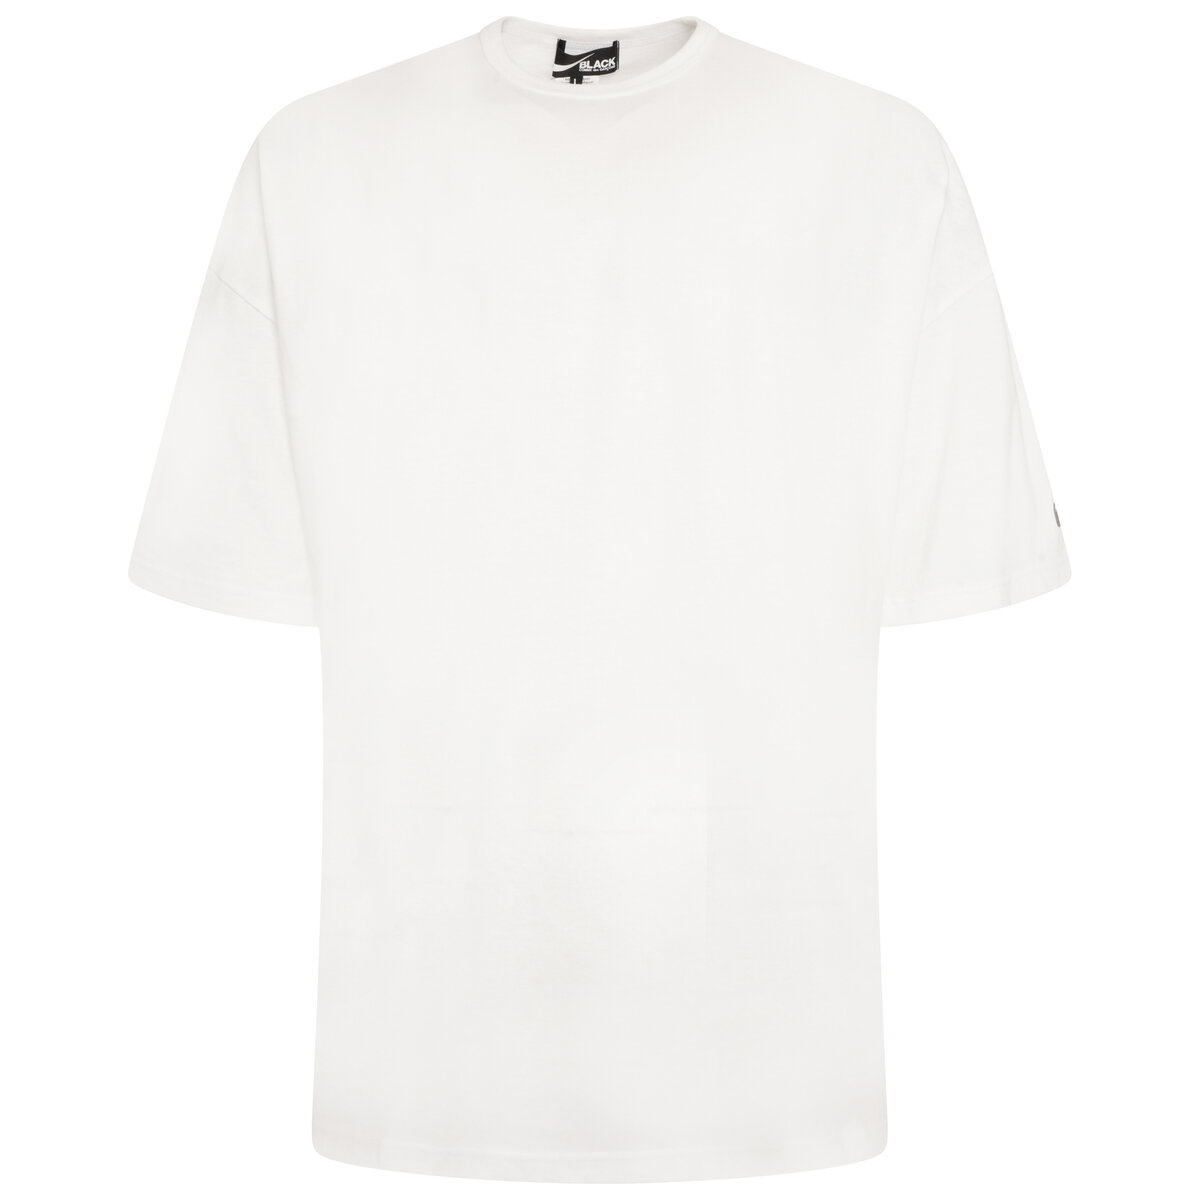 Unisex Nike Logo On Sleeve T-shirt White L White